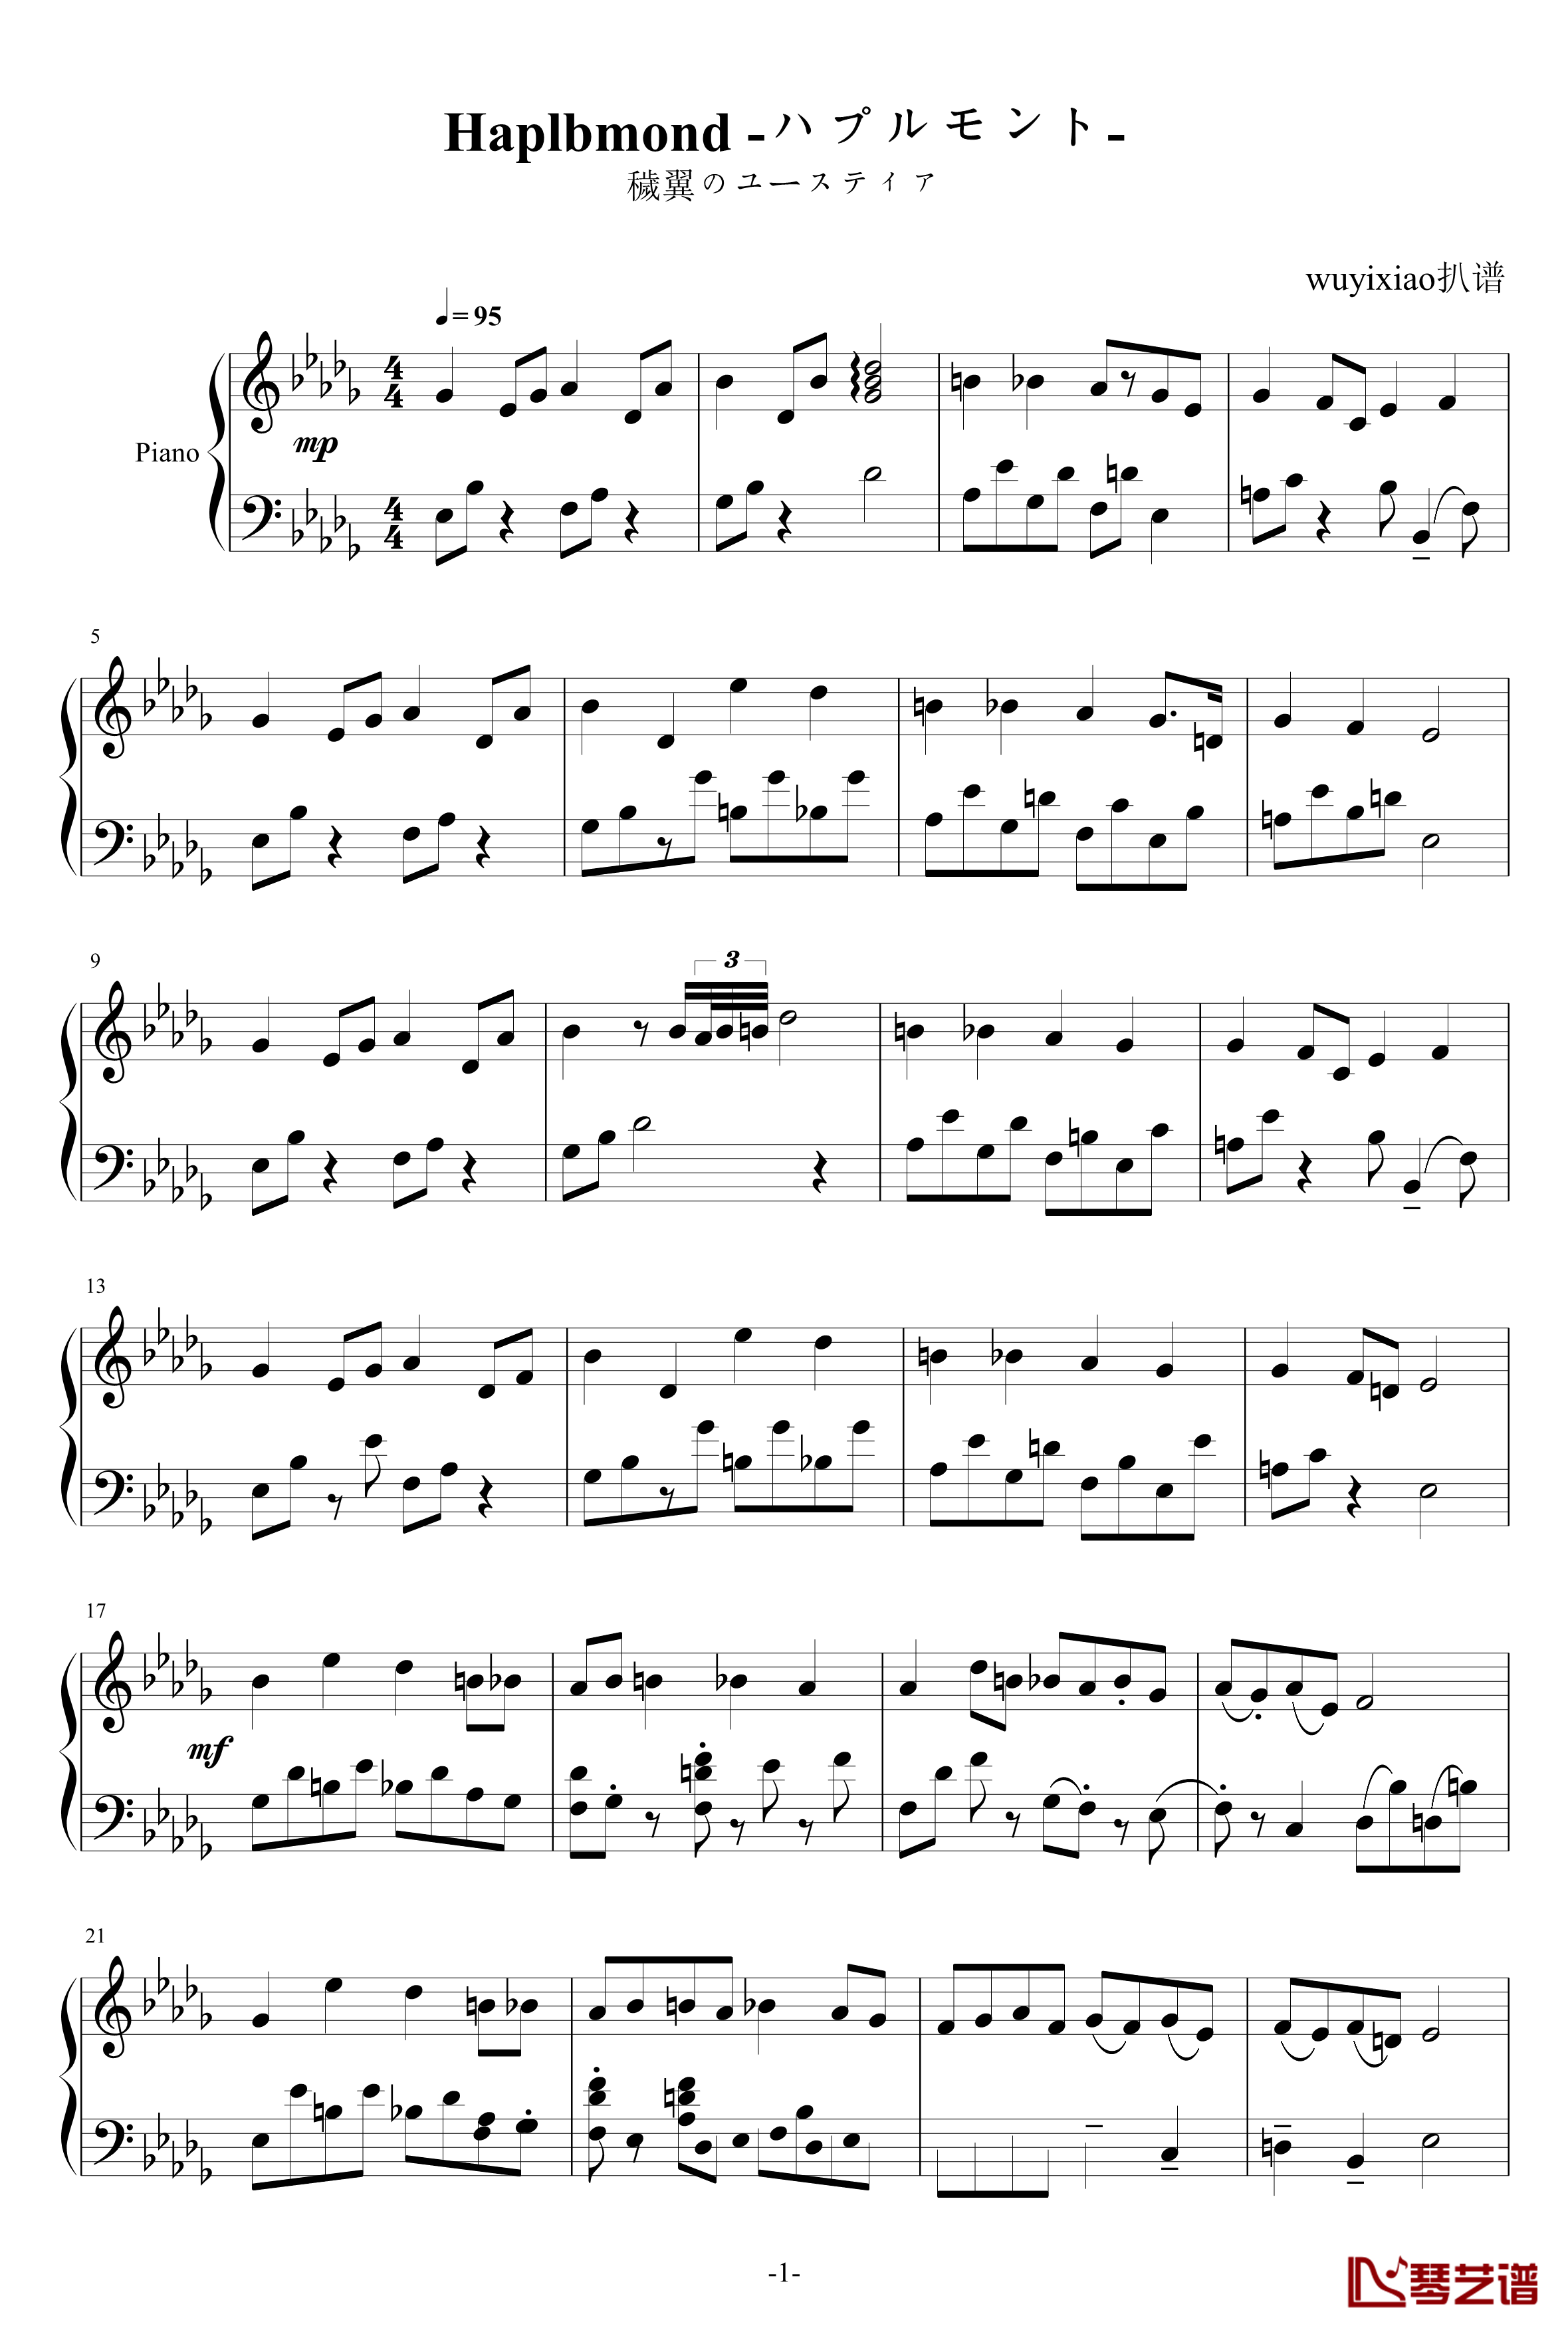 Haplbmond钢琴谱-ハプルモント--穢翼のユースティア1